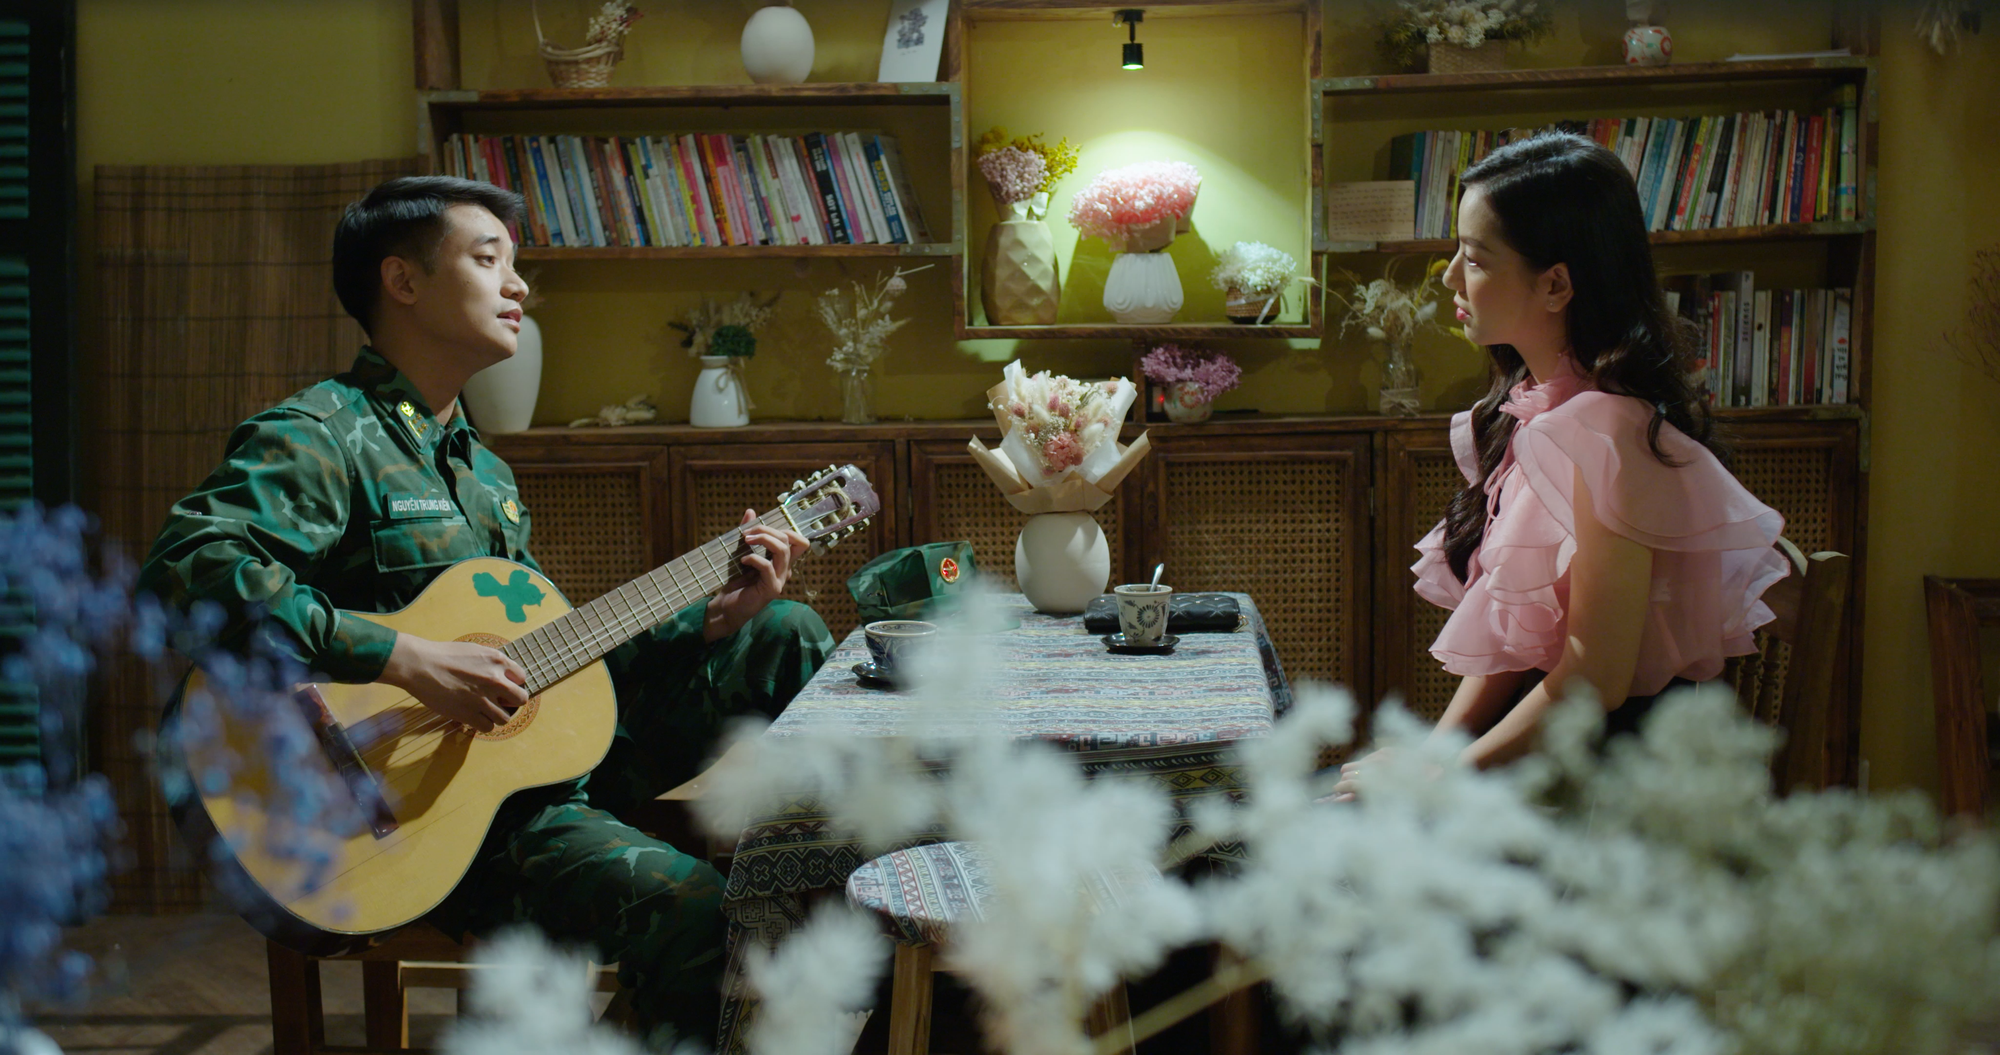 Phim do Quang Sự, Lê Hạ Anh đóng chính lên Netflix - Ảnh 2.